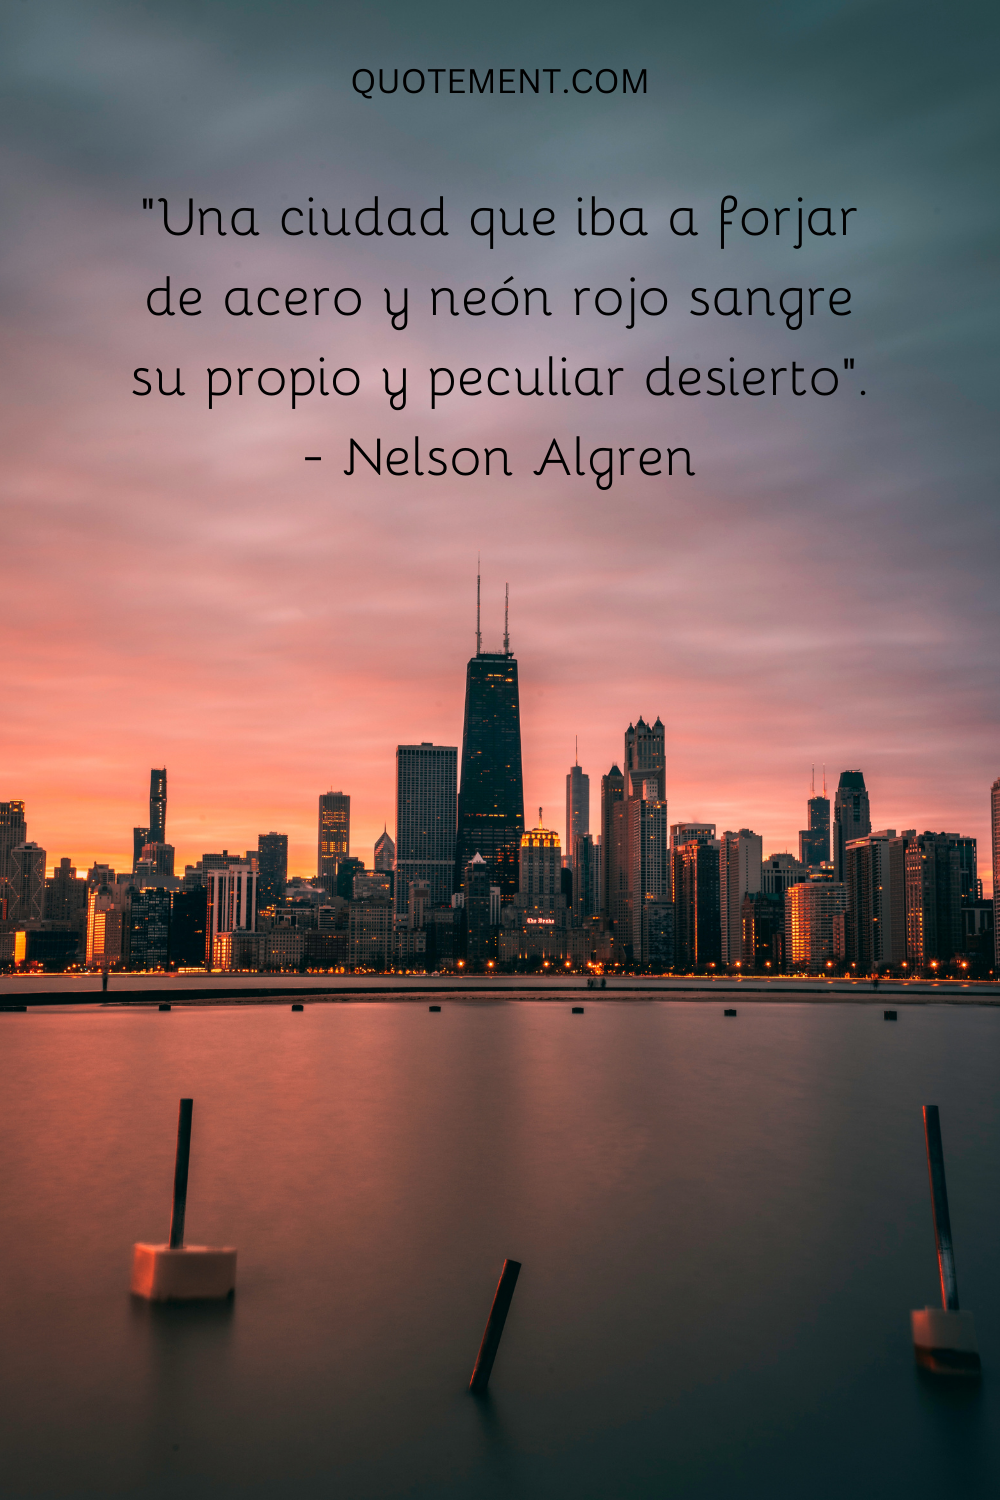 "Una ciudad que iba a forjar de acero y neón rojo sangre su propio y peculiar desierto". - Nelson Algren